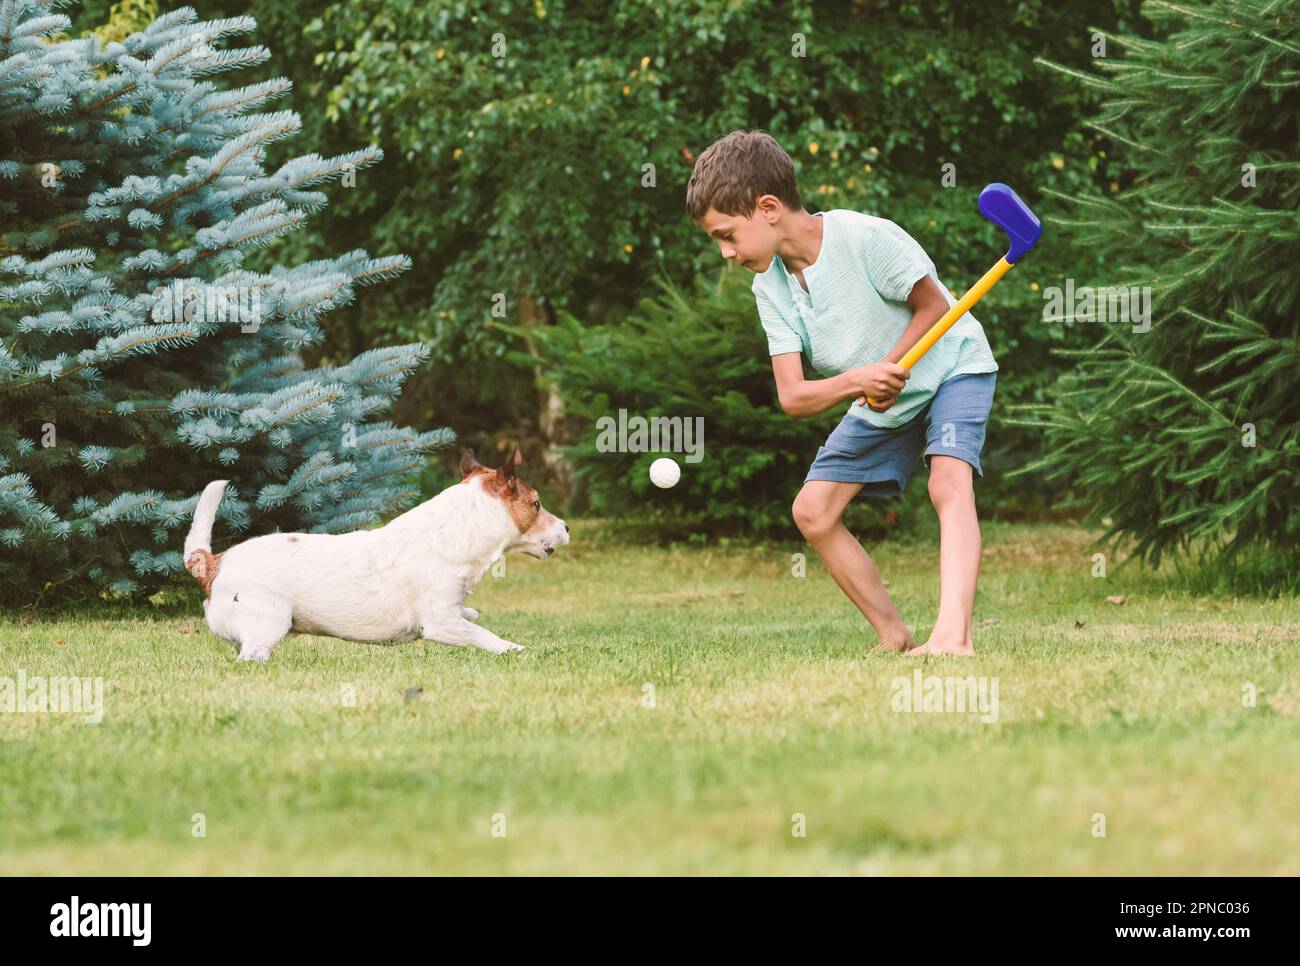 Piccolo bambino che gioca a golf sul prato del cortile e il cane che intercetta e cattura la palla Foto Stock